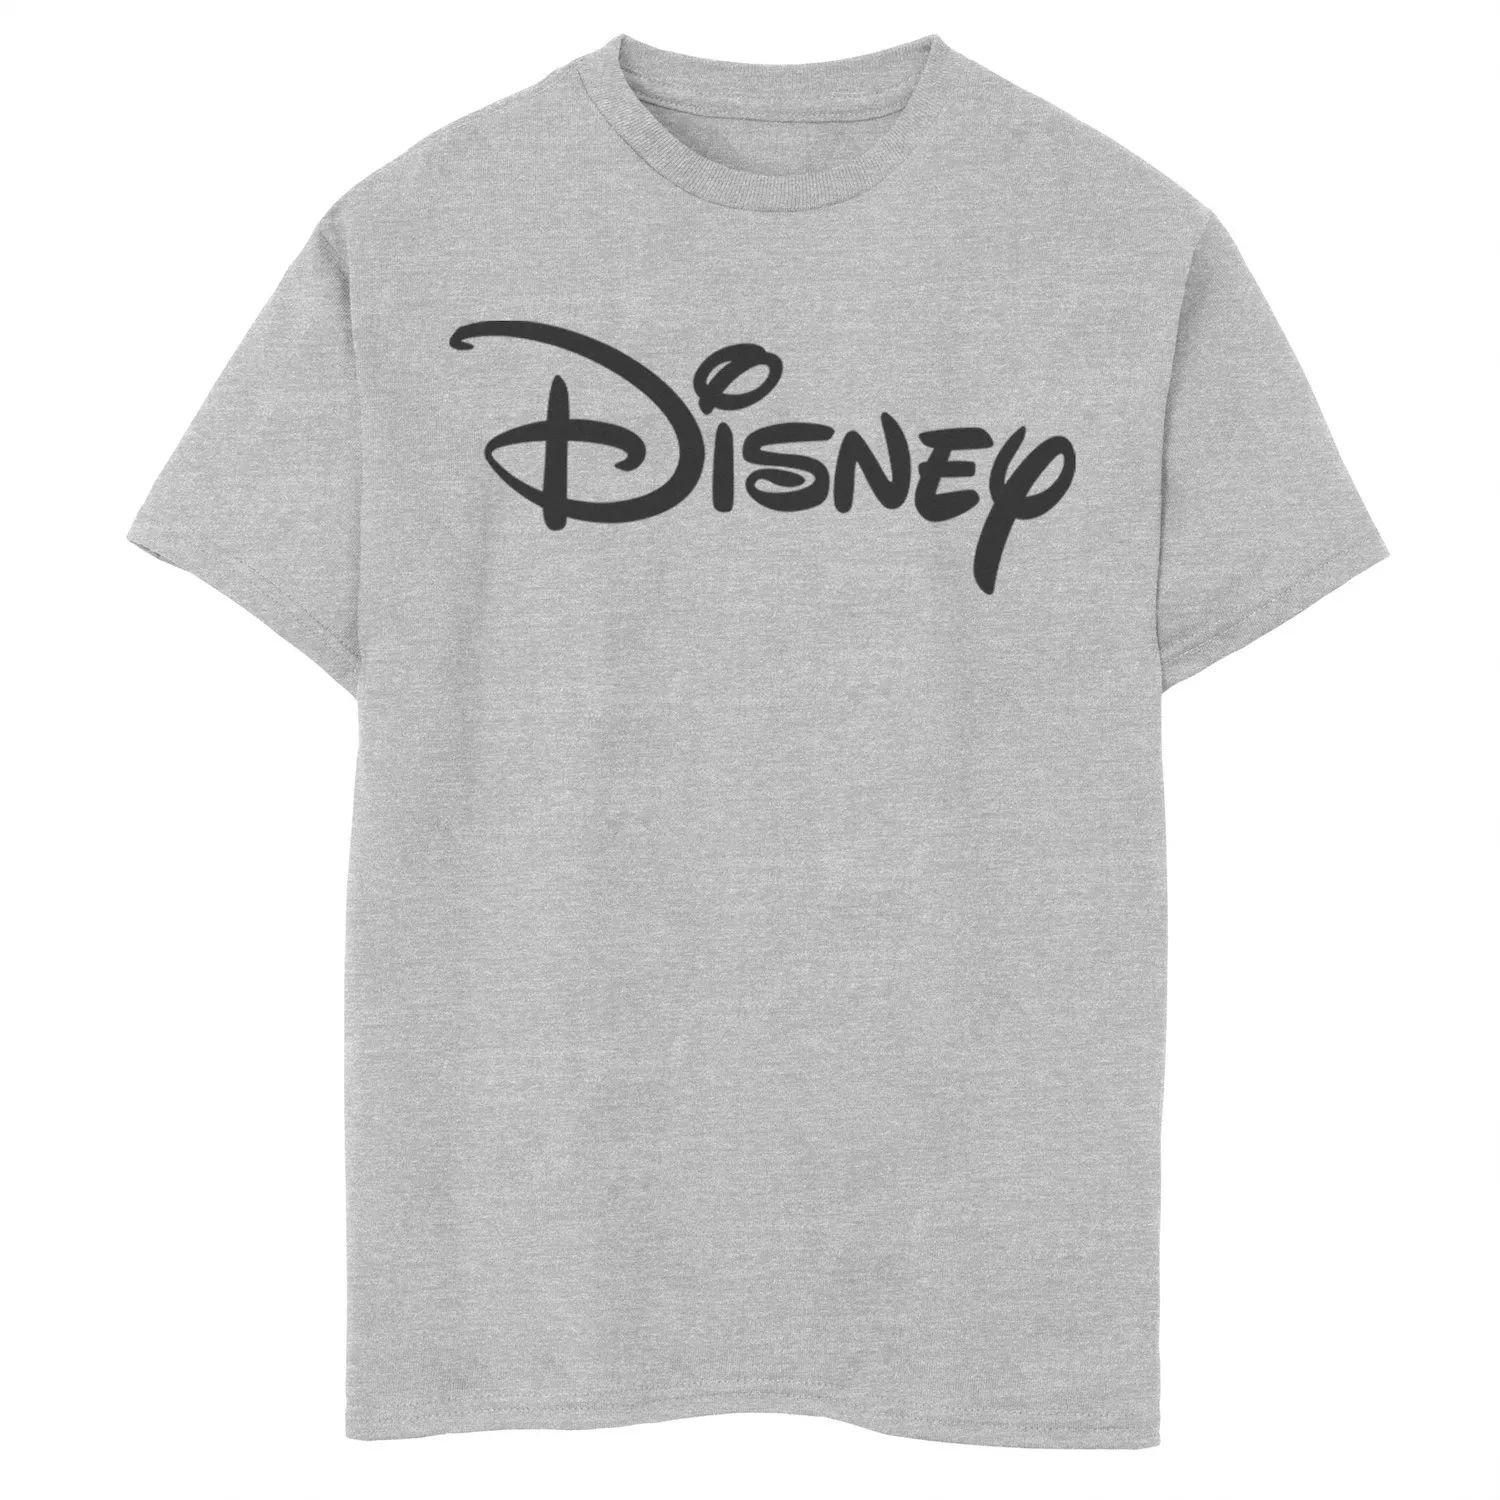 Базовая футболка с логотипом Disney для мальчиков 8–20 лет Disney базовая футболка disney с логотипом disney для мальчиков 8–20 лет и графическим рисунком disney